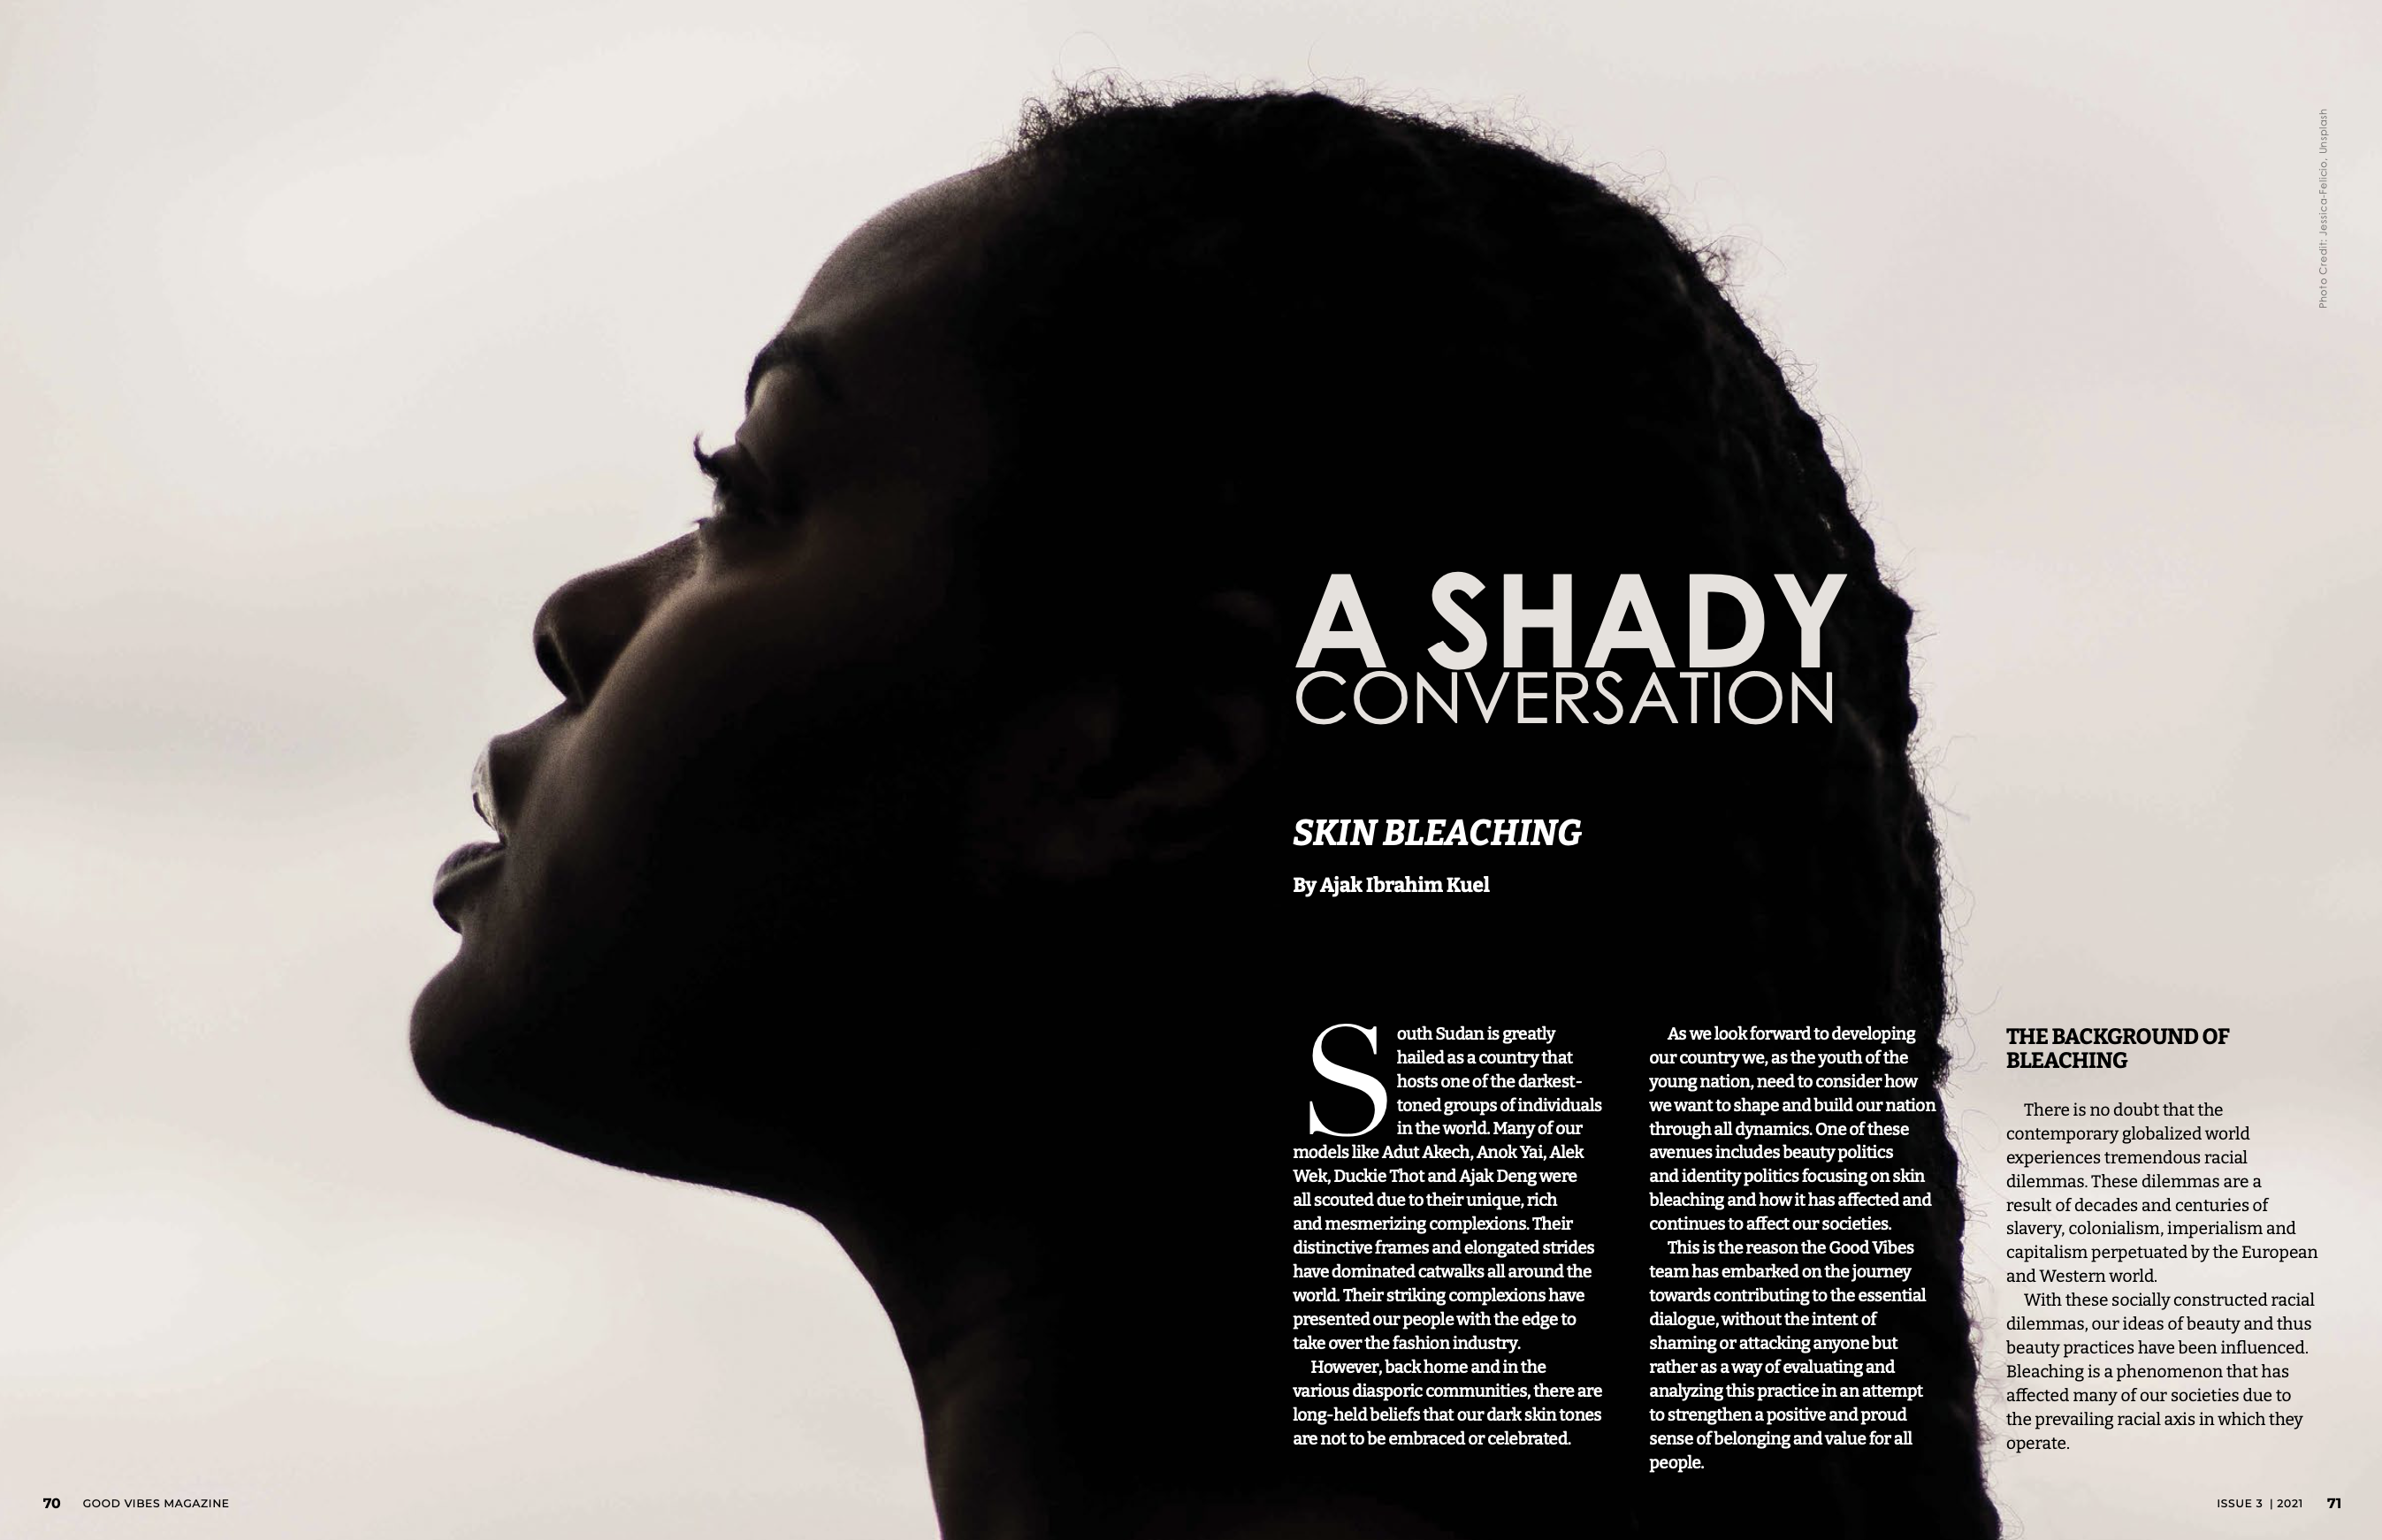 A SHADY CONVERSATION (Skin Bleaching)